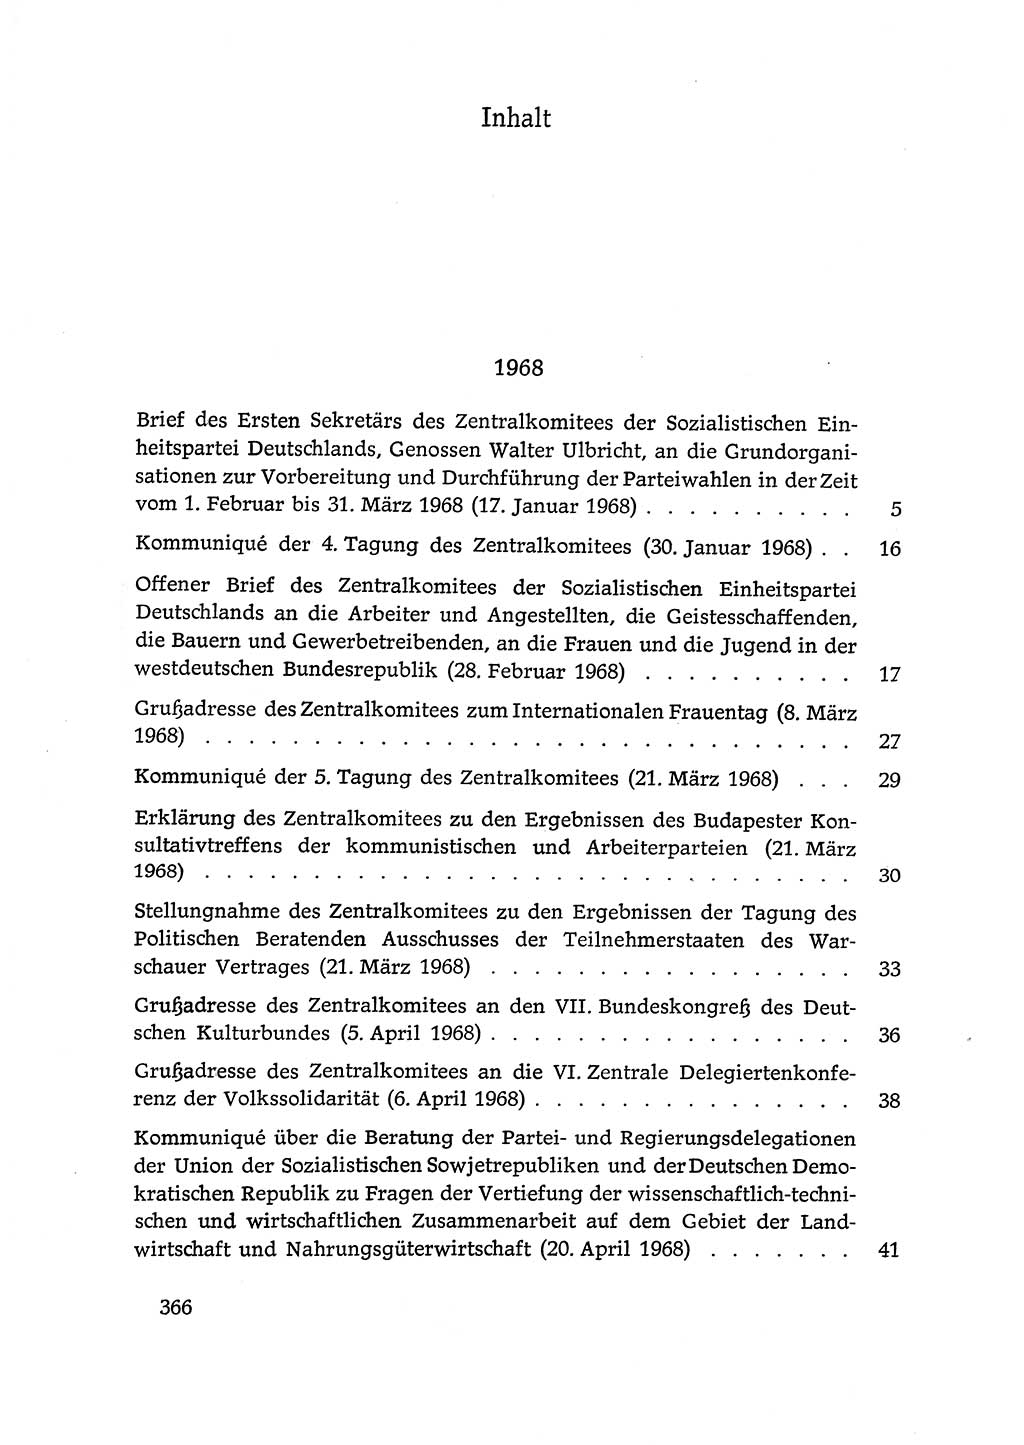 Dokumente der Sozialistischen Einheitspartei Deutschlands (SED) [Deutsche Demokratische Republik (DDR)] 1968-1969, Seite 366 (Dok. SED DDR 1968-1969, S. 366)